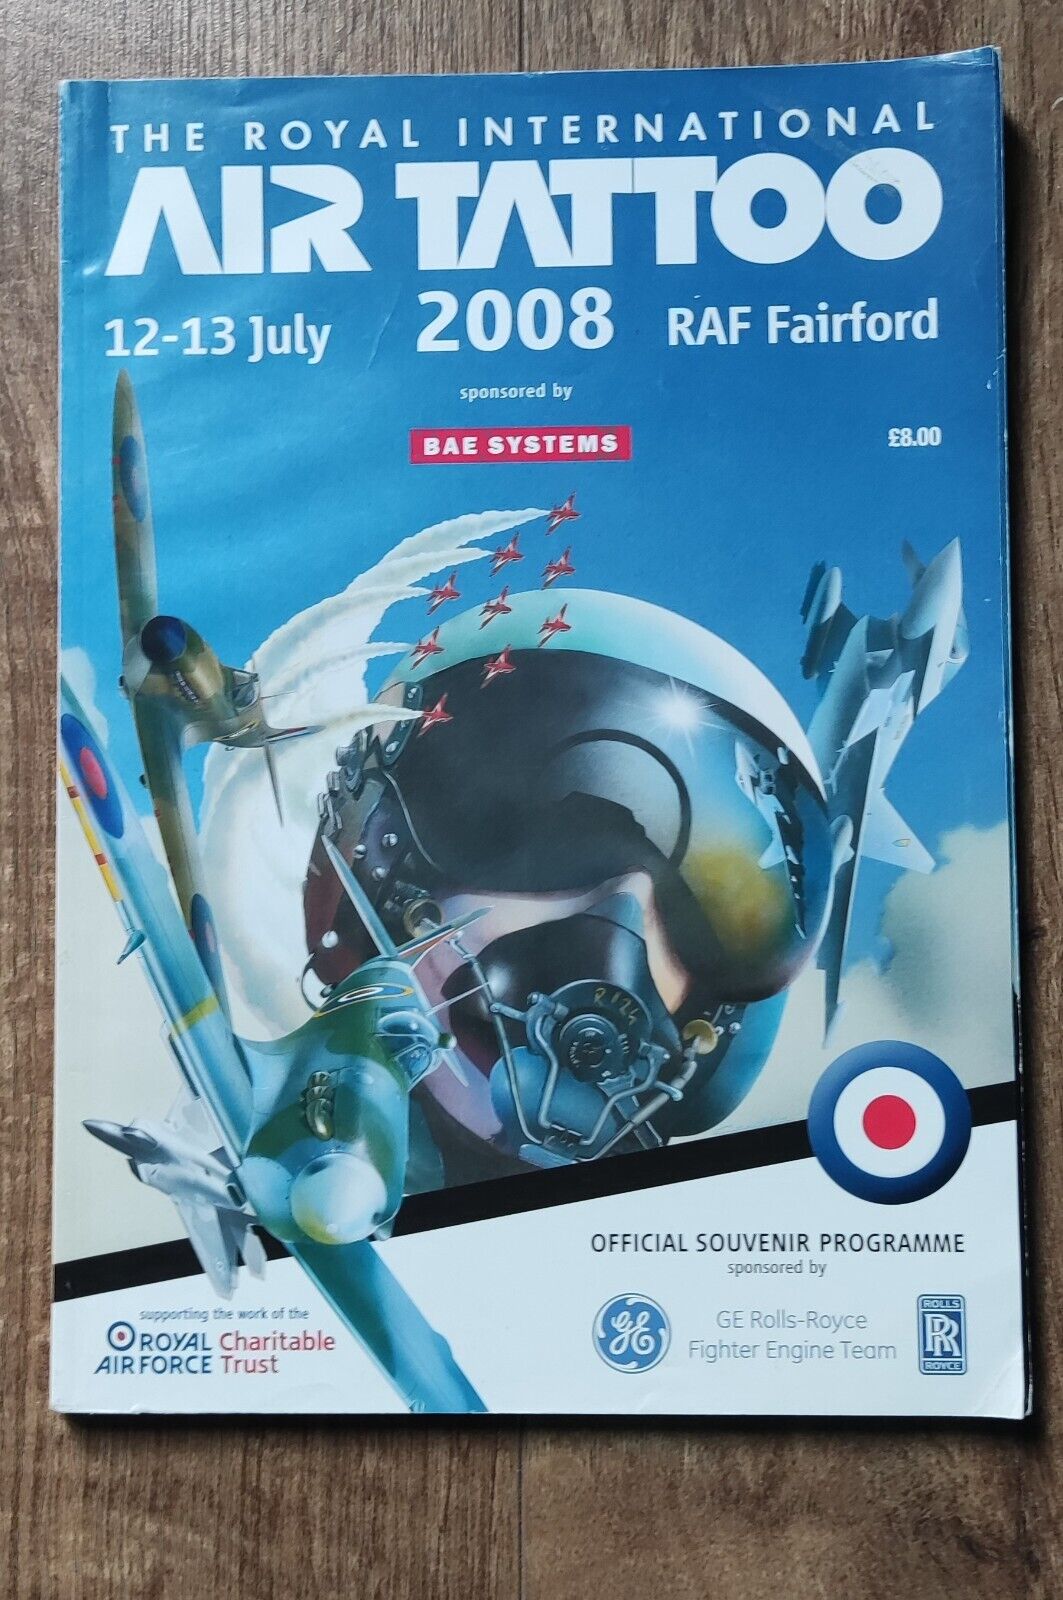 The Royal International Air Tattoo 2008 Souvenir Programme - RAF Fairford